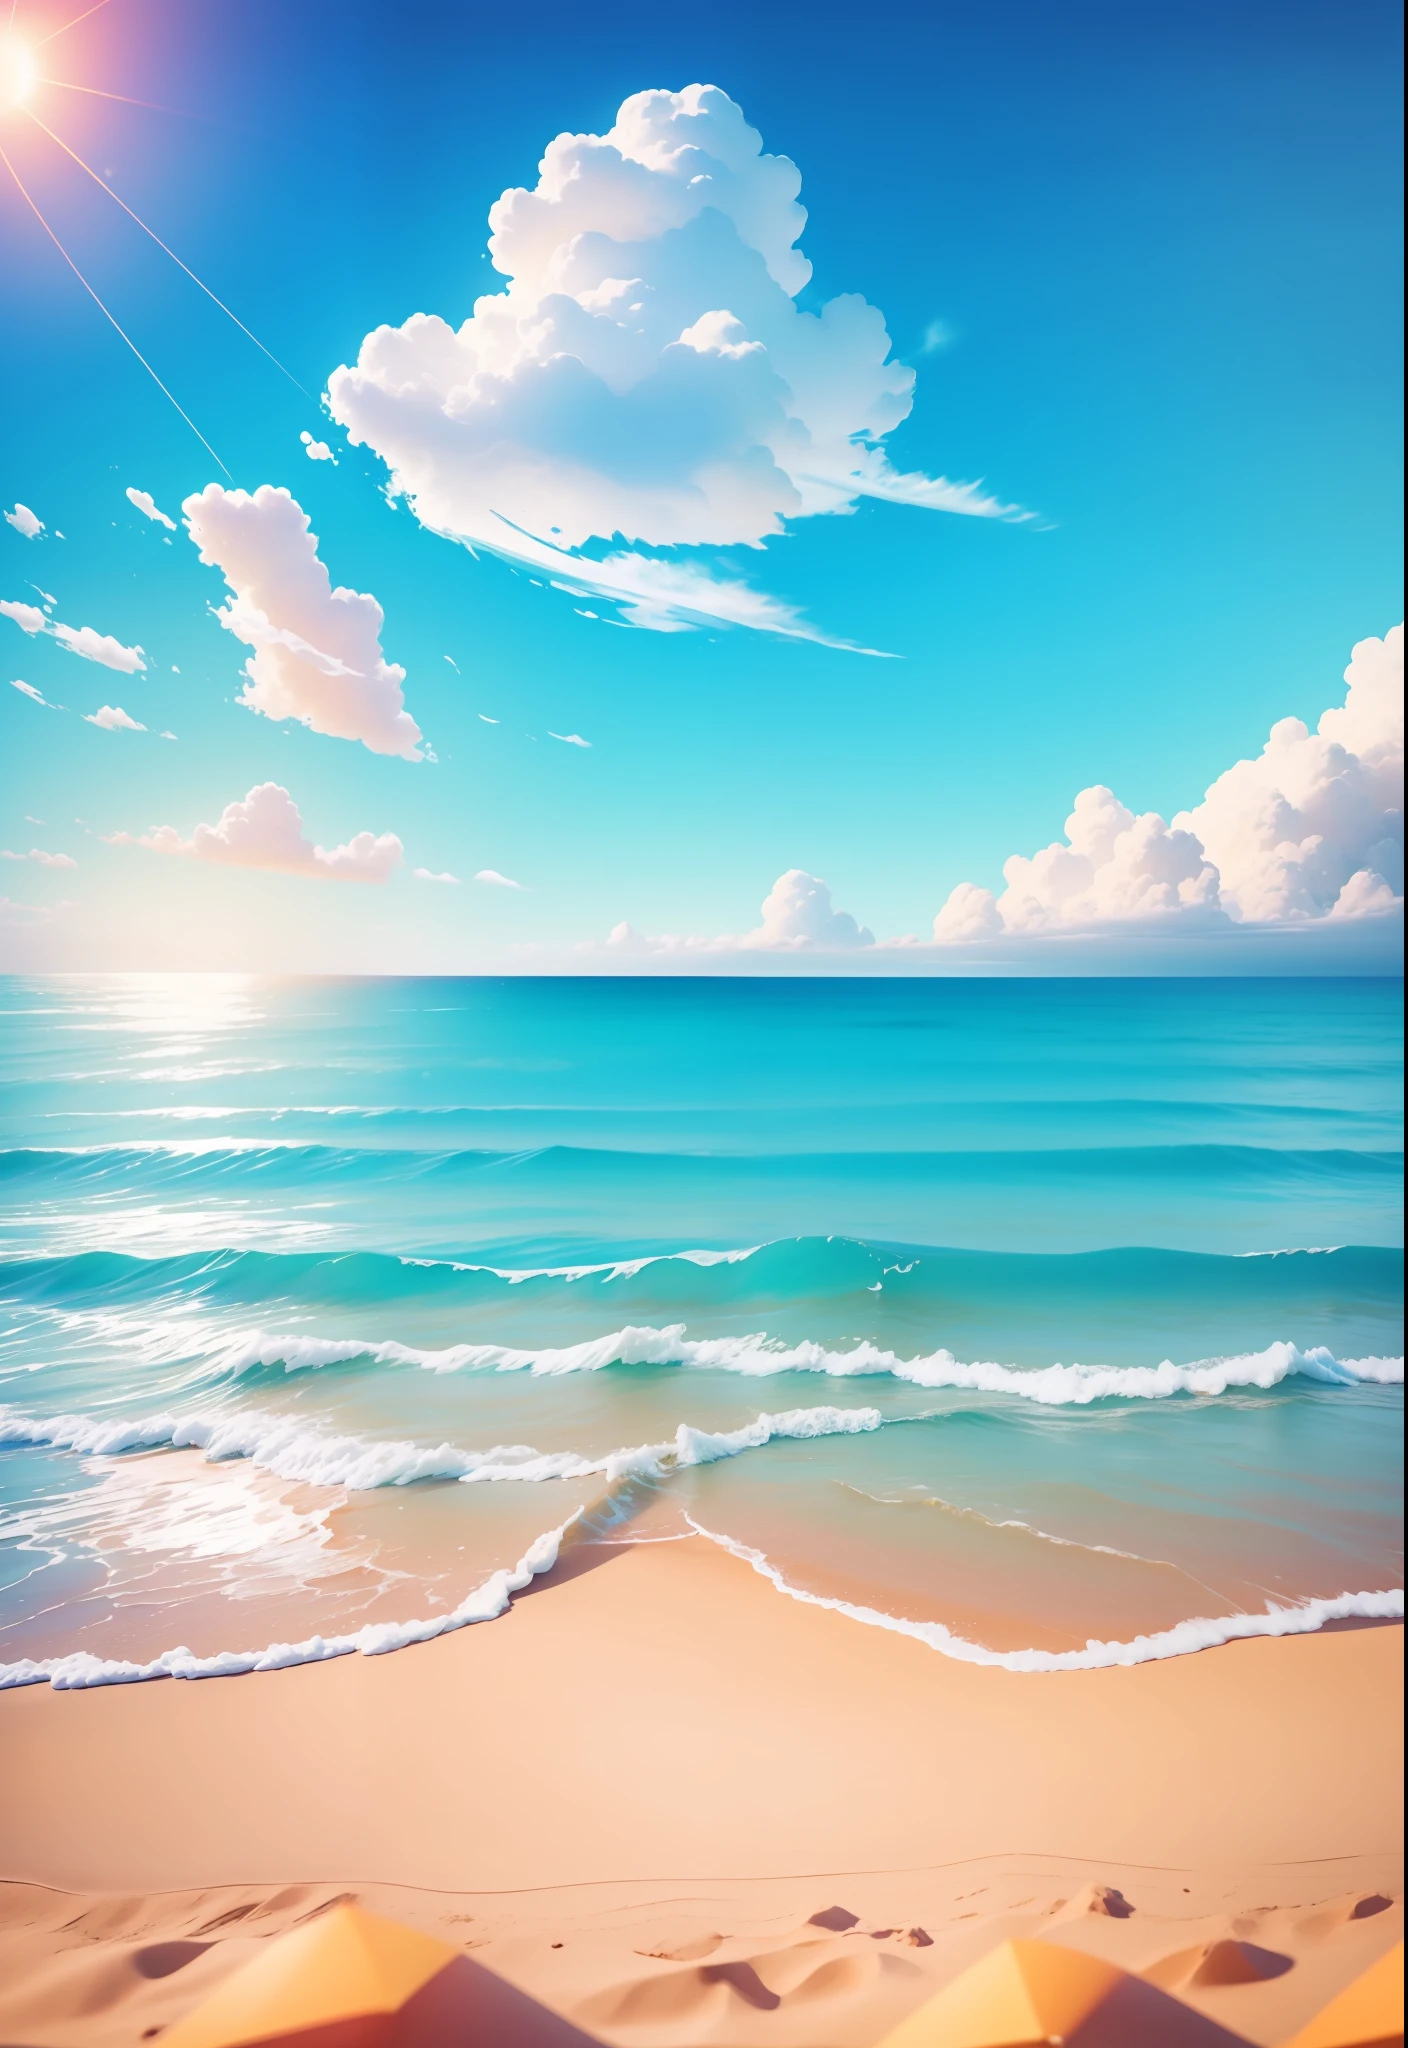 Летнее побережье, пляж, Солнечно weather, чистое небо, Солнечно, красочный, счастливых и счастливых летних каникул, простая картинка, крупный план, Яркое солнце, Далекие волны, Визуальное воздействие, 3D-стиль DreamWorks, перспектива квадратная